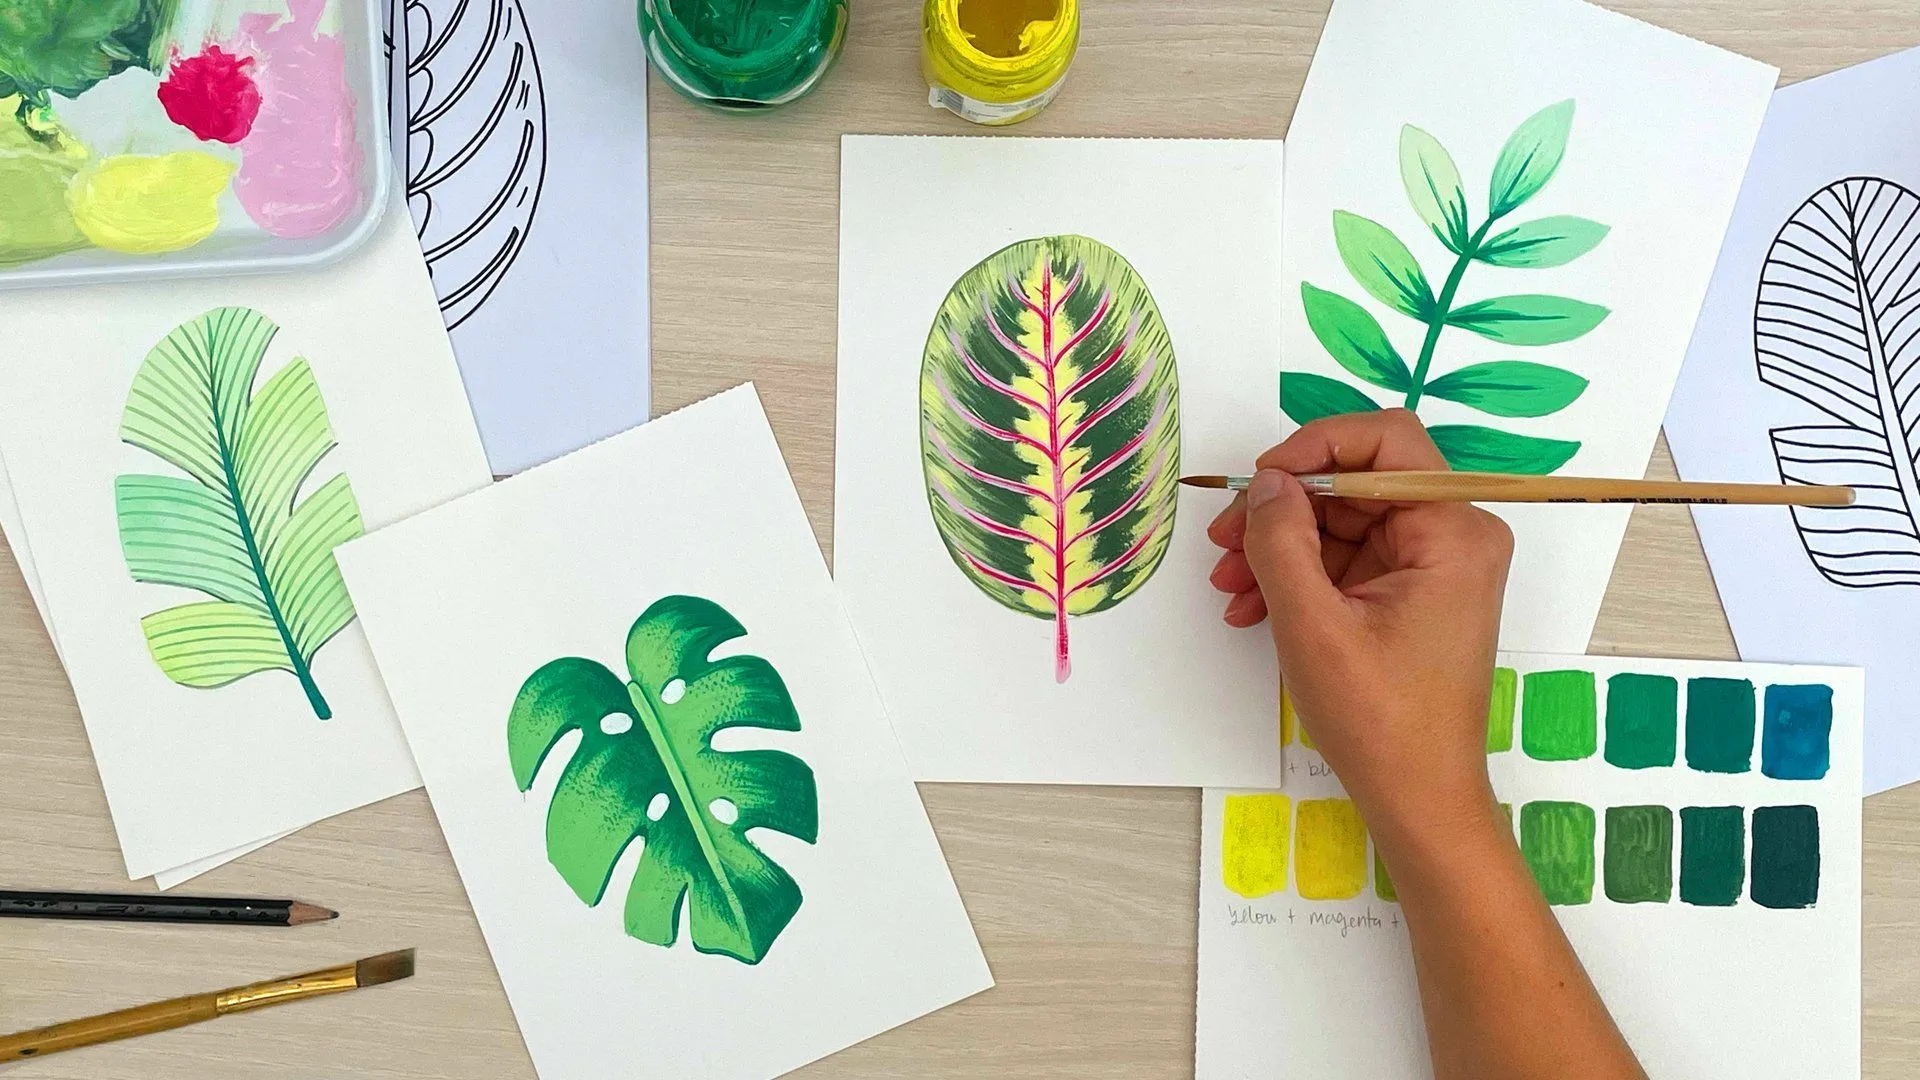 Hojas tropicales en gouache: domina el dibujo y las habilidades de pintura  | Silvia Ospina | Skillshare